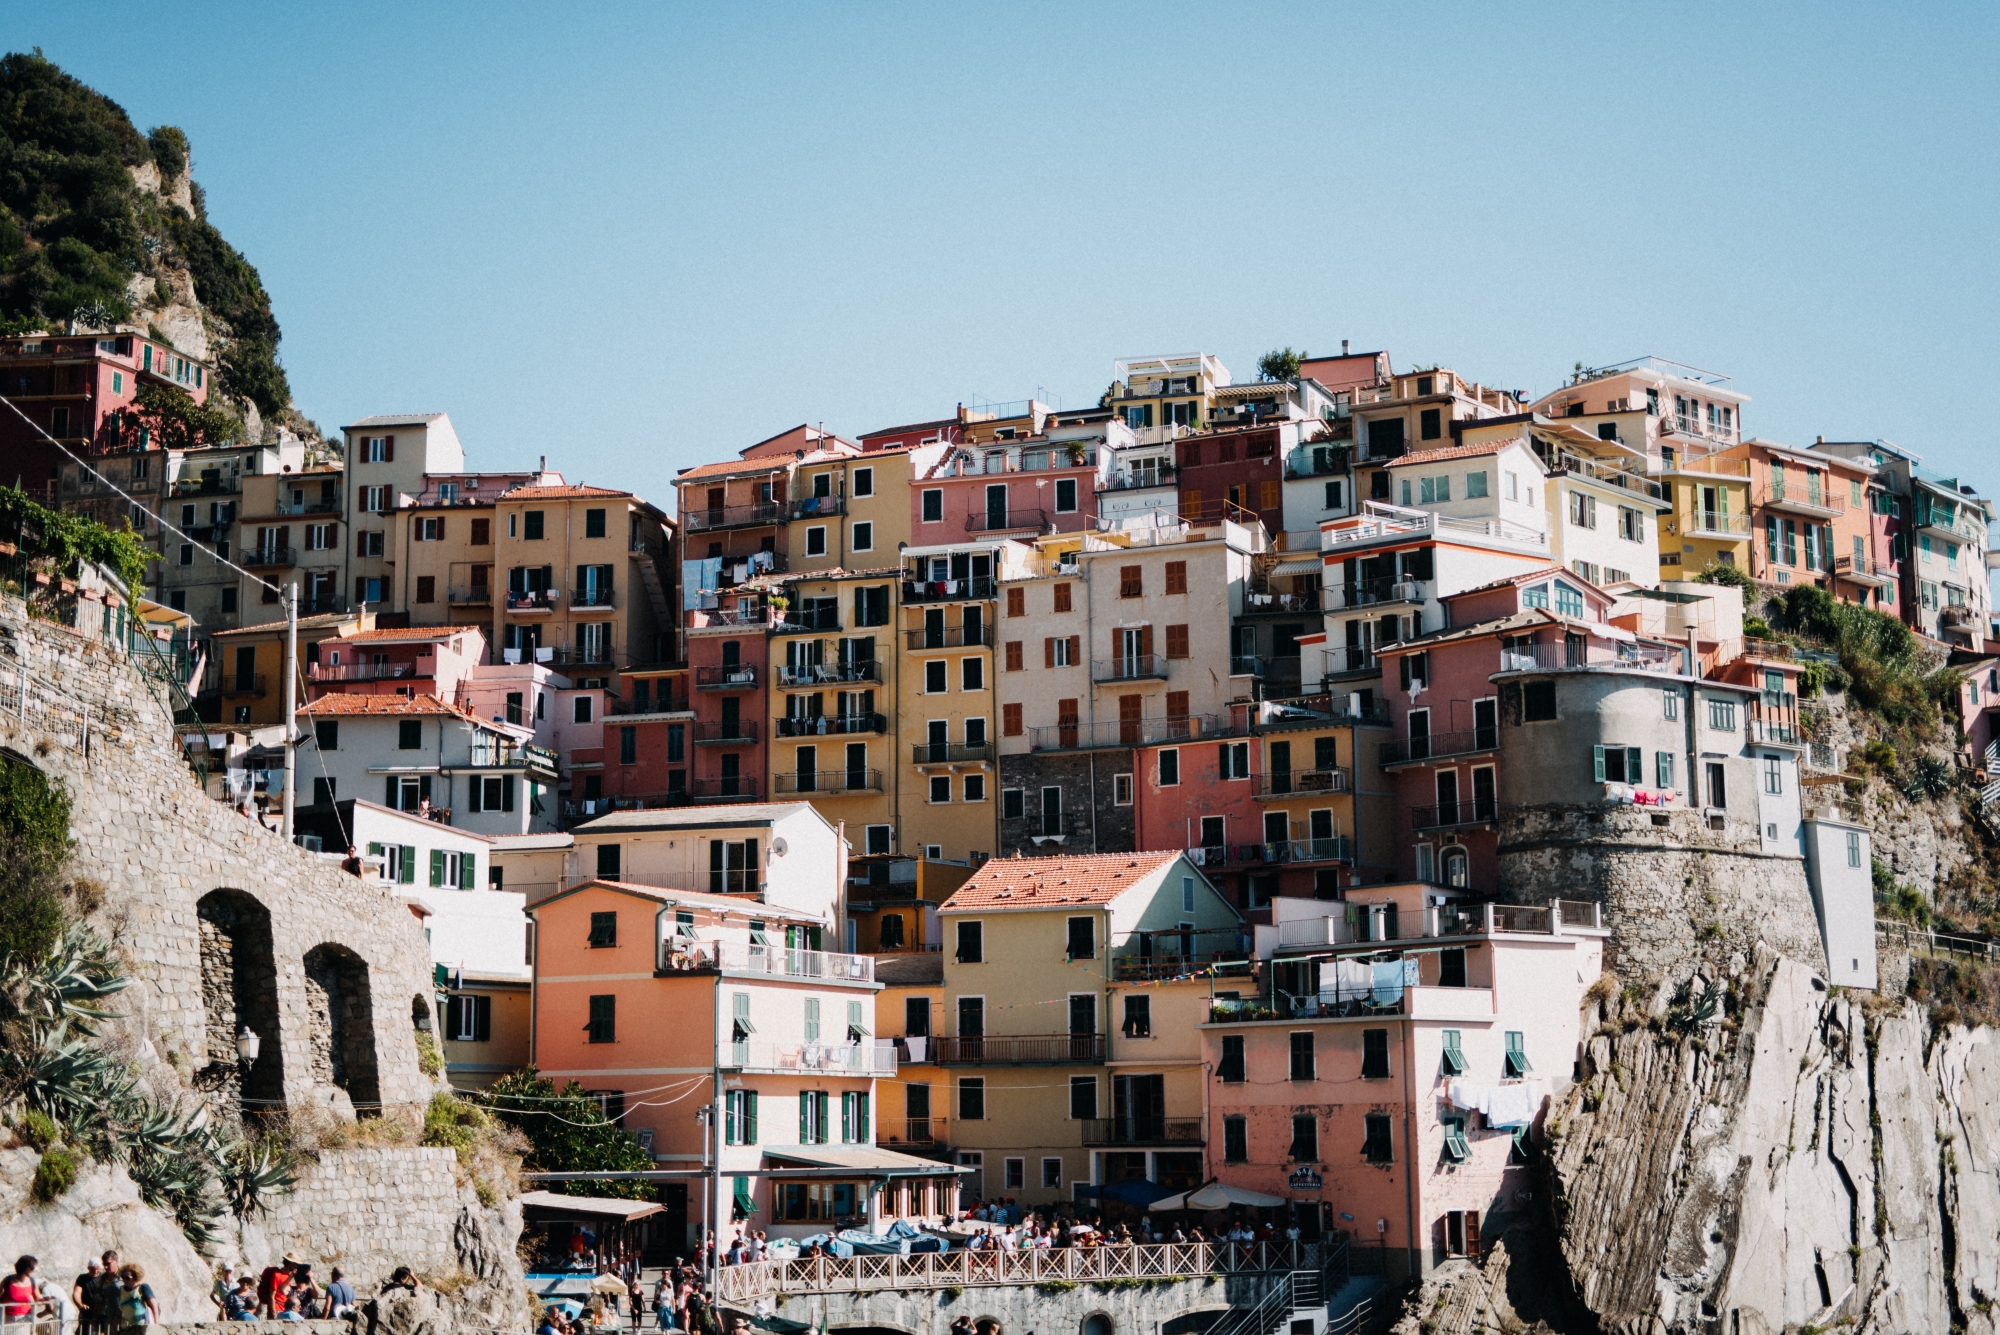 Włochy 2019 || Cinque Terre